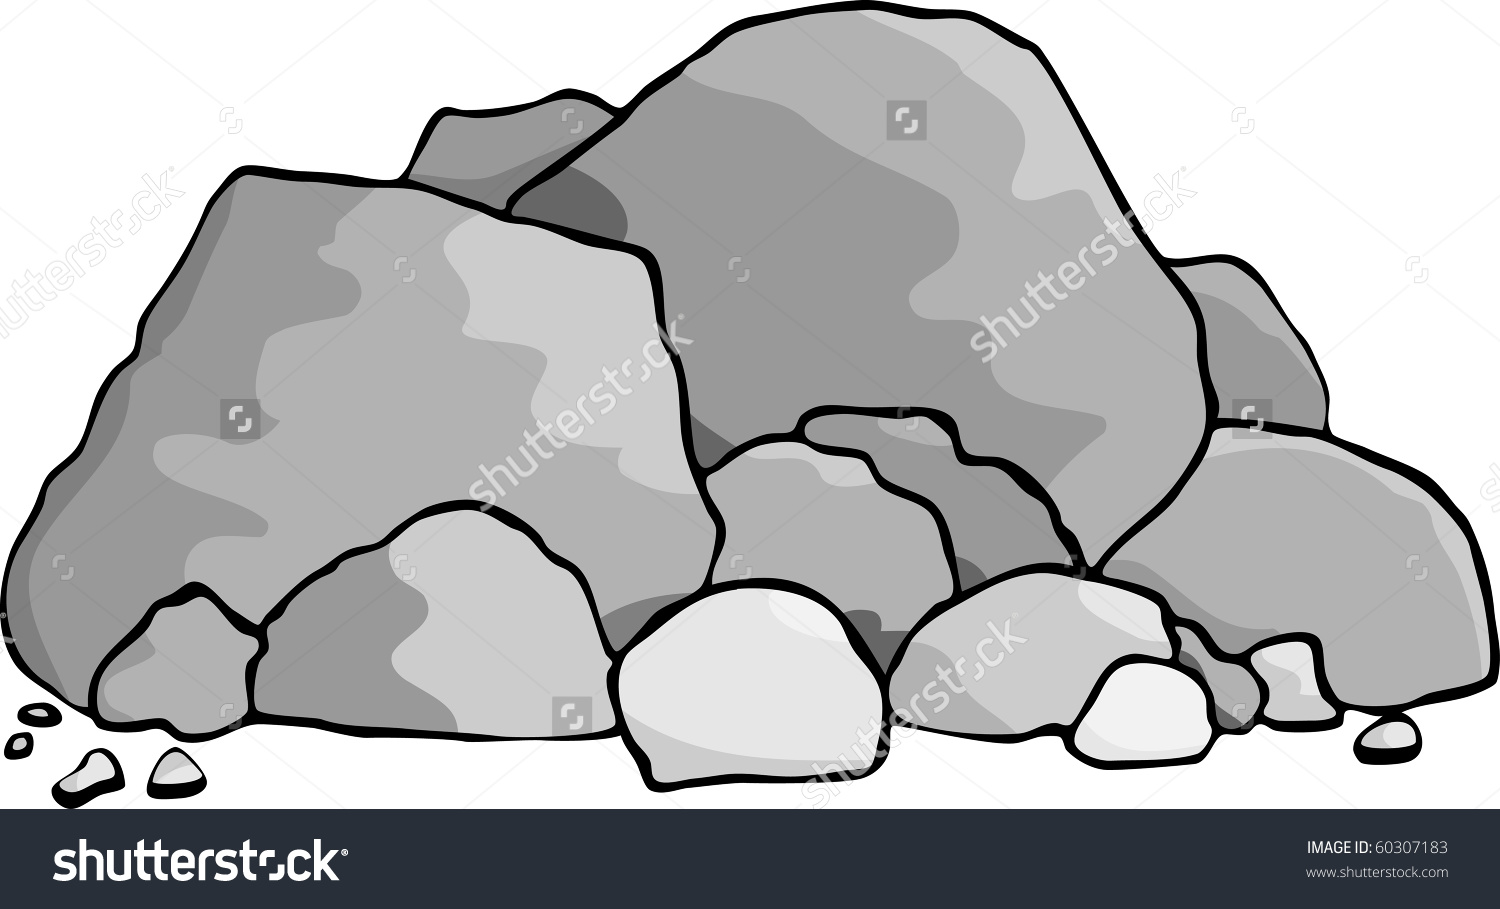 Boulders coloring #10, Download drawings